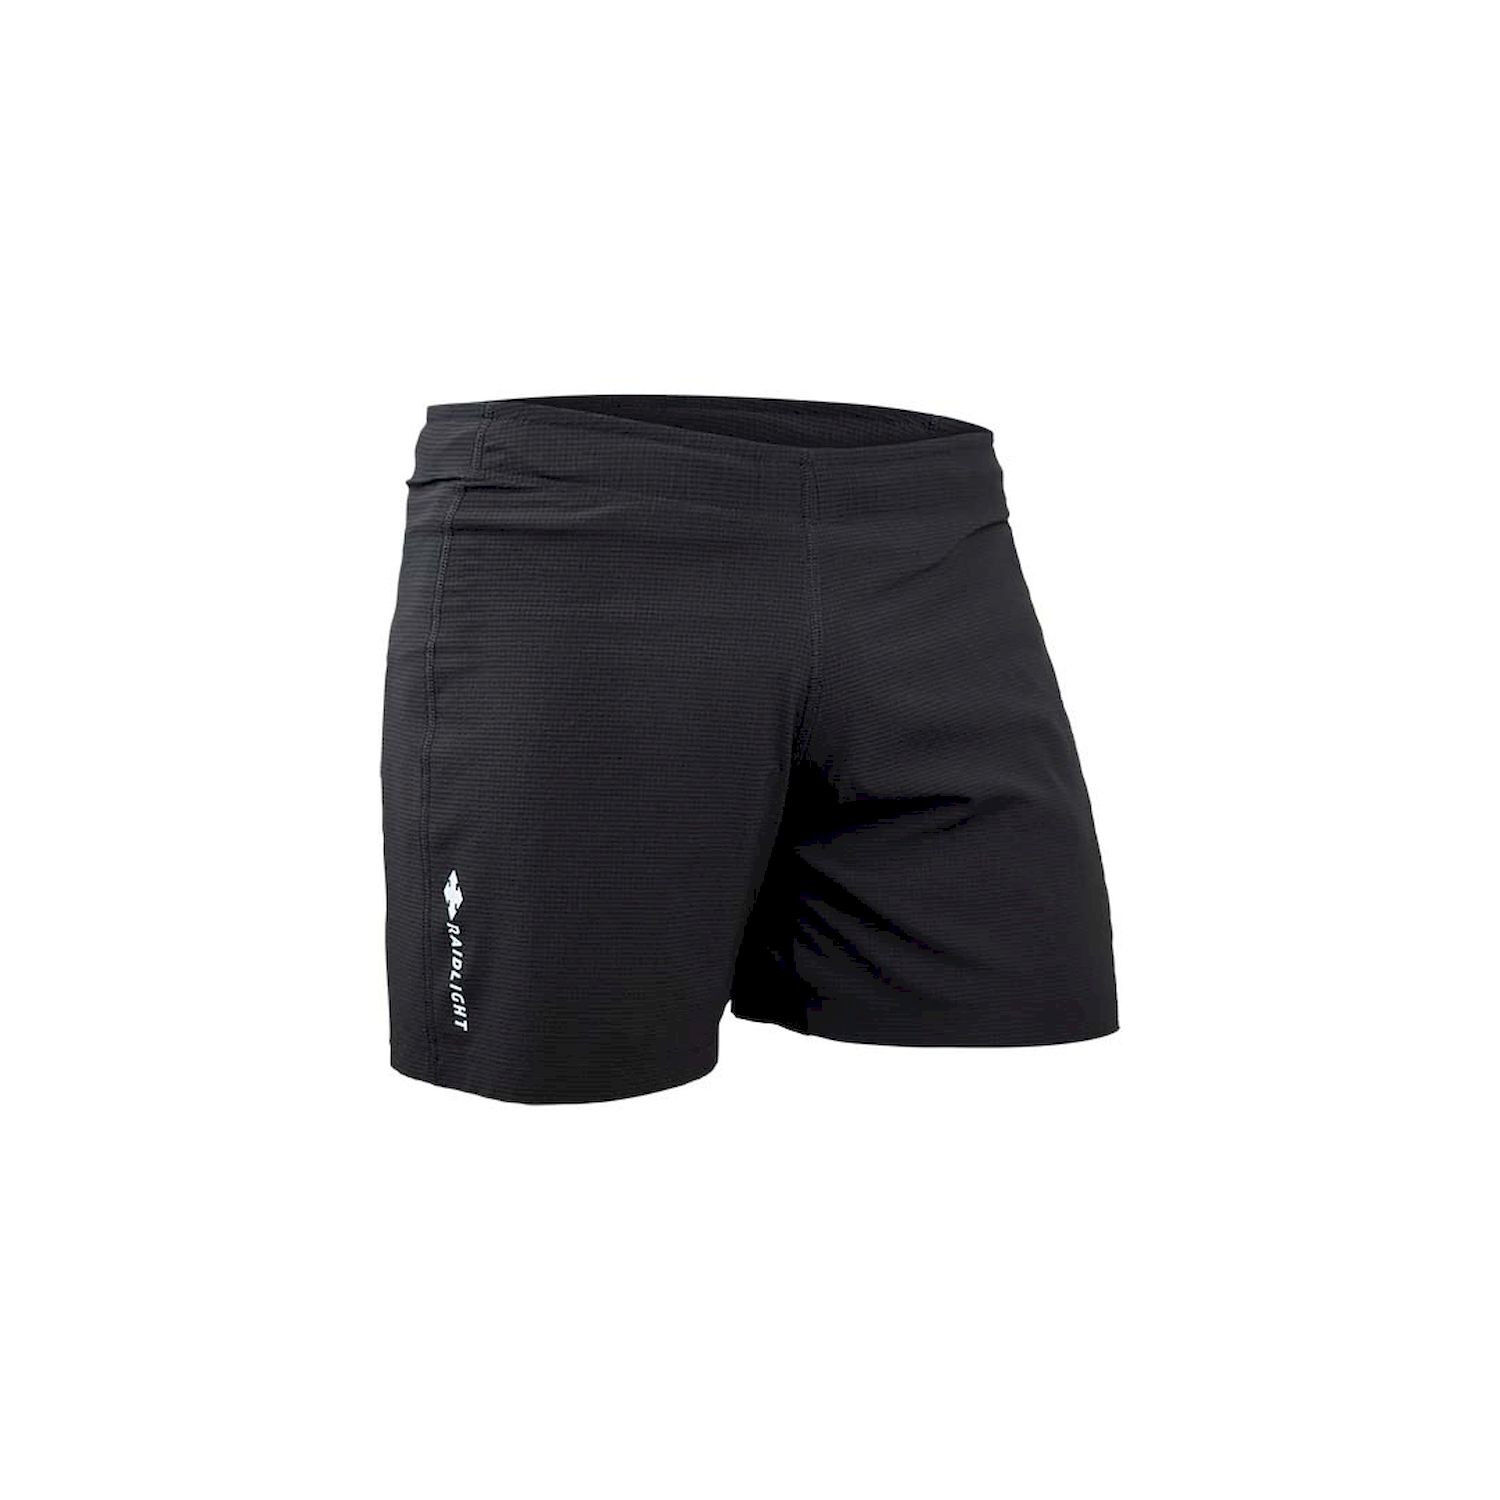 Raidlight Responsiv Short - Trail running shorts - Men's